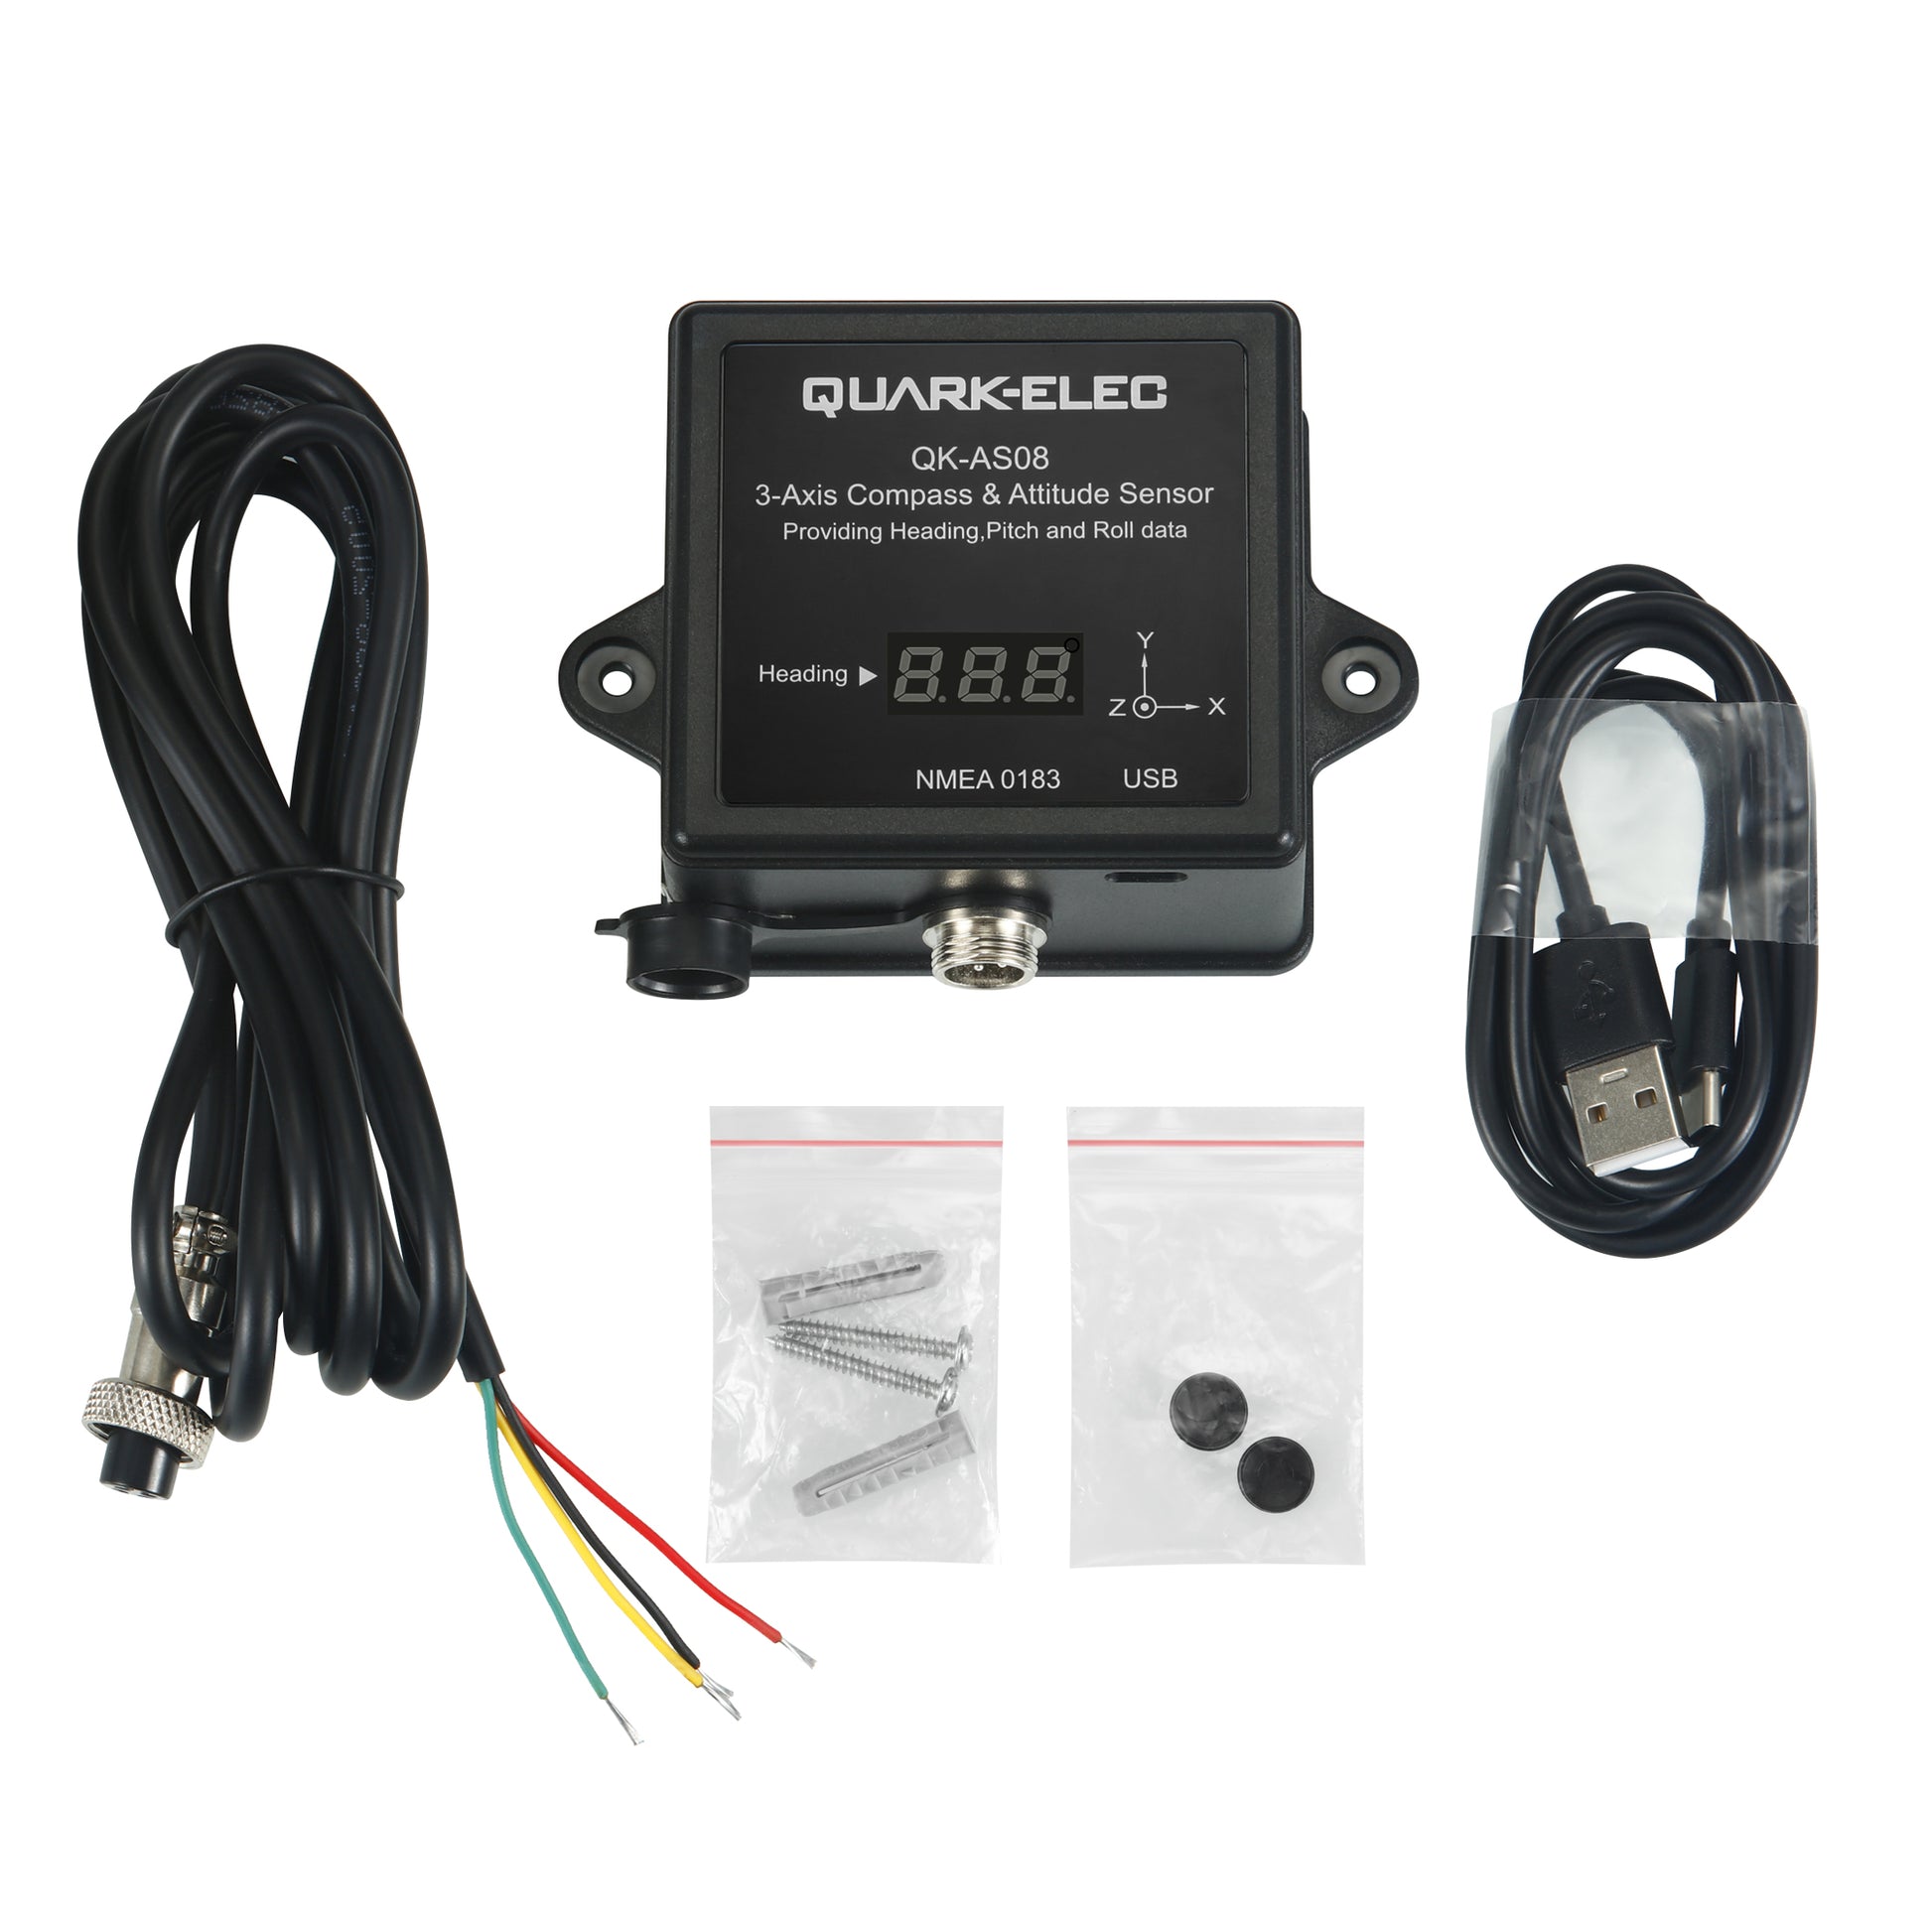 Quark-Elec Three-axis Compass & Attitude Sensor - QK-AS08